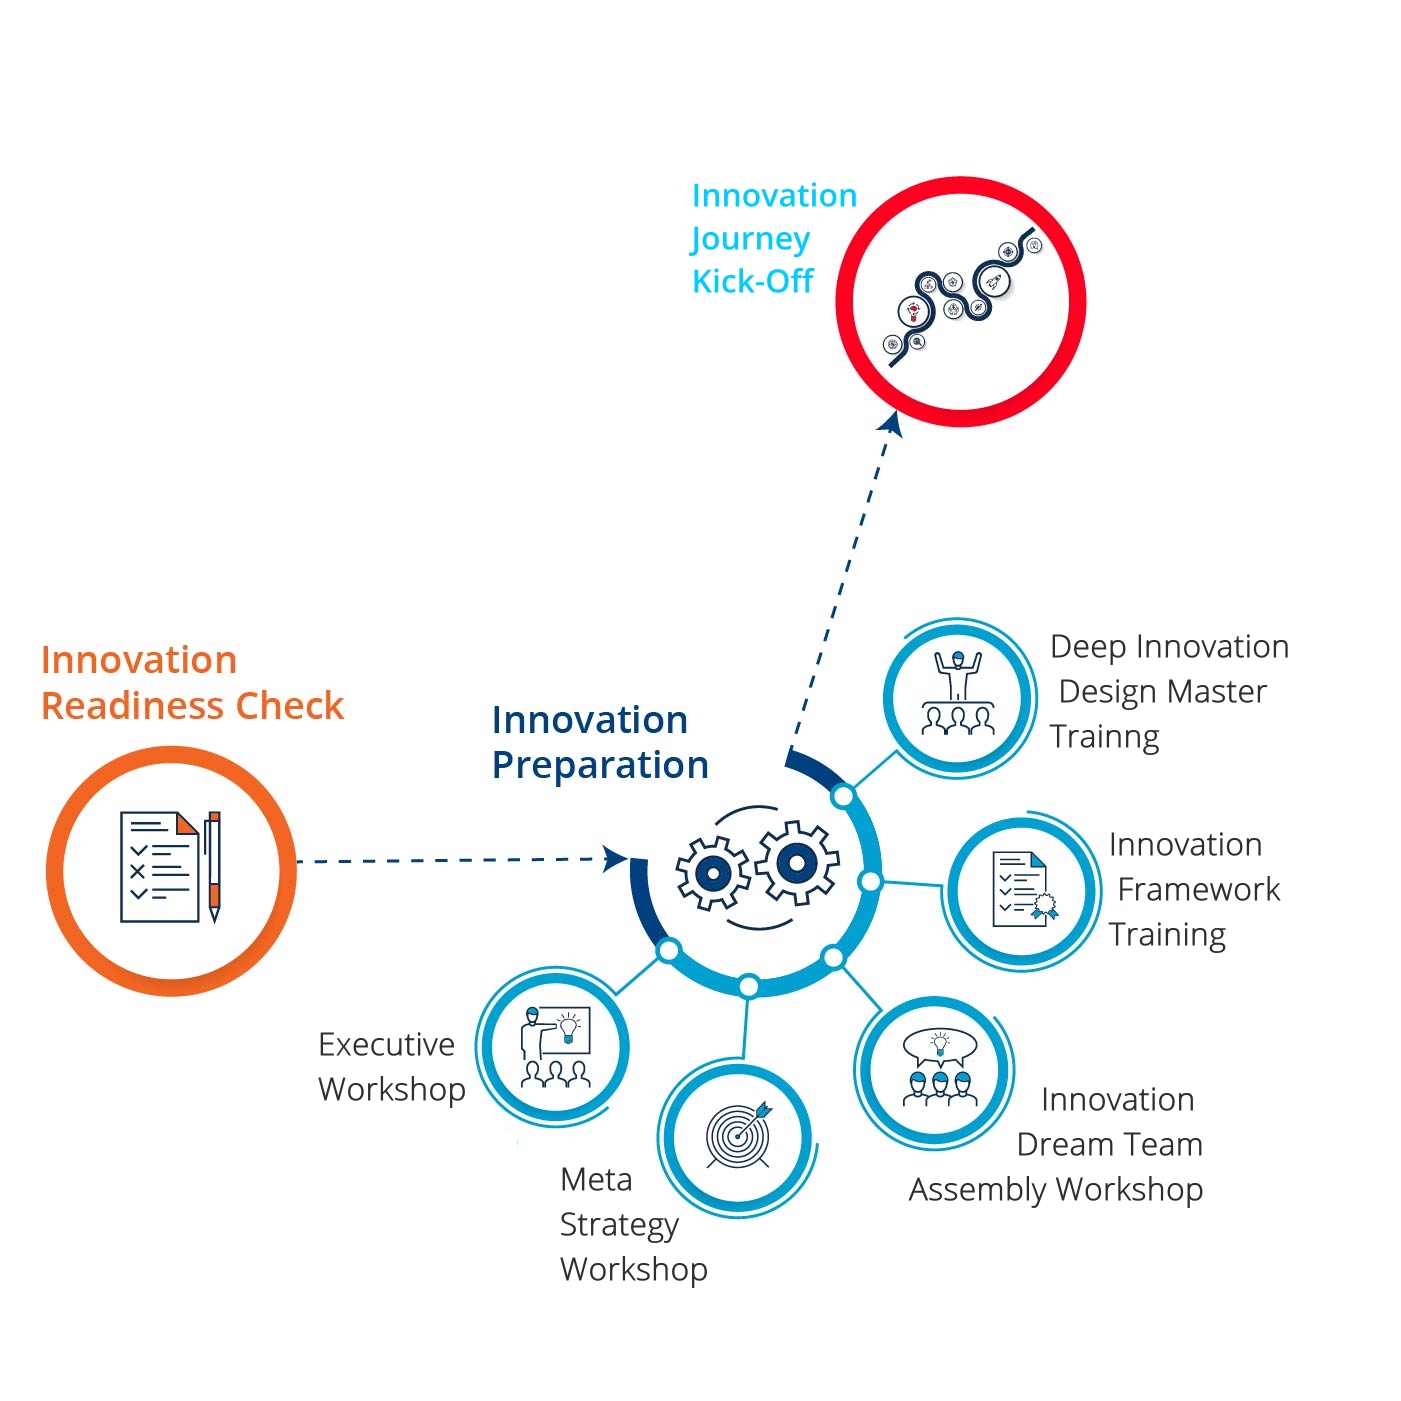 Innovation Management Implementation